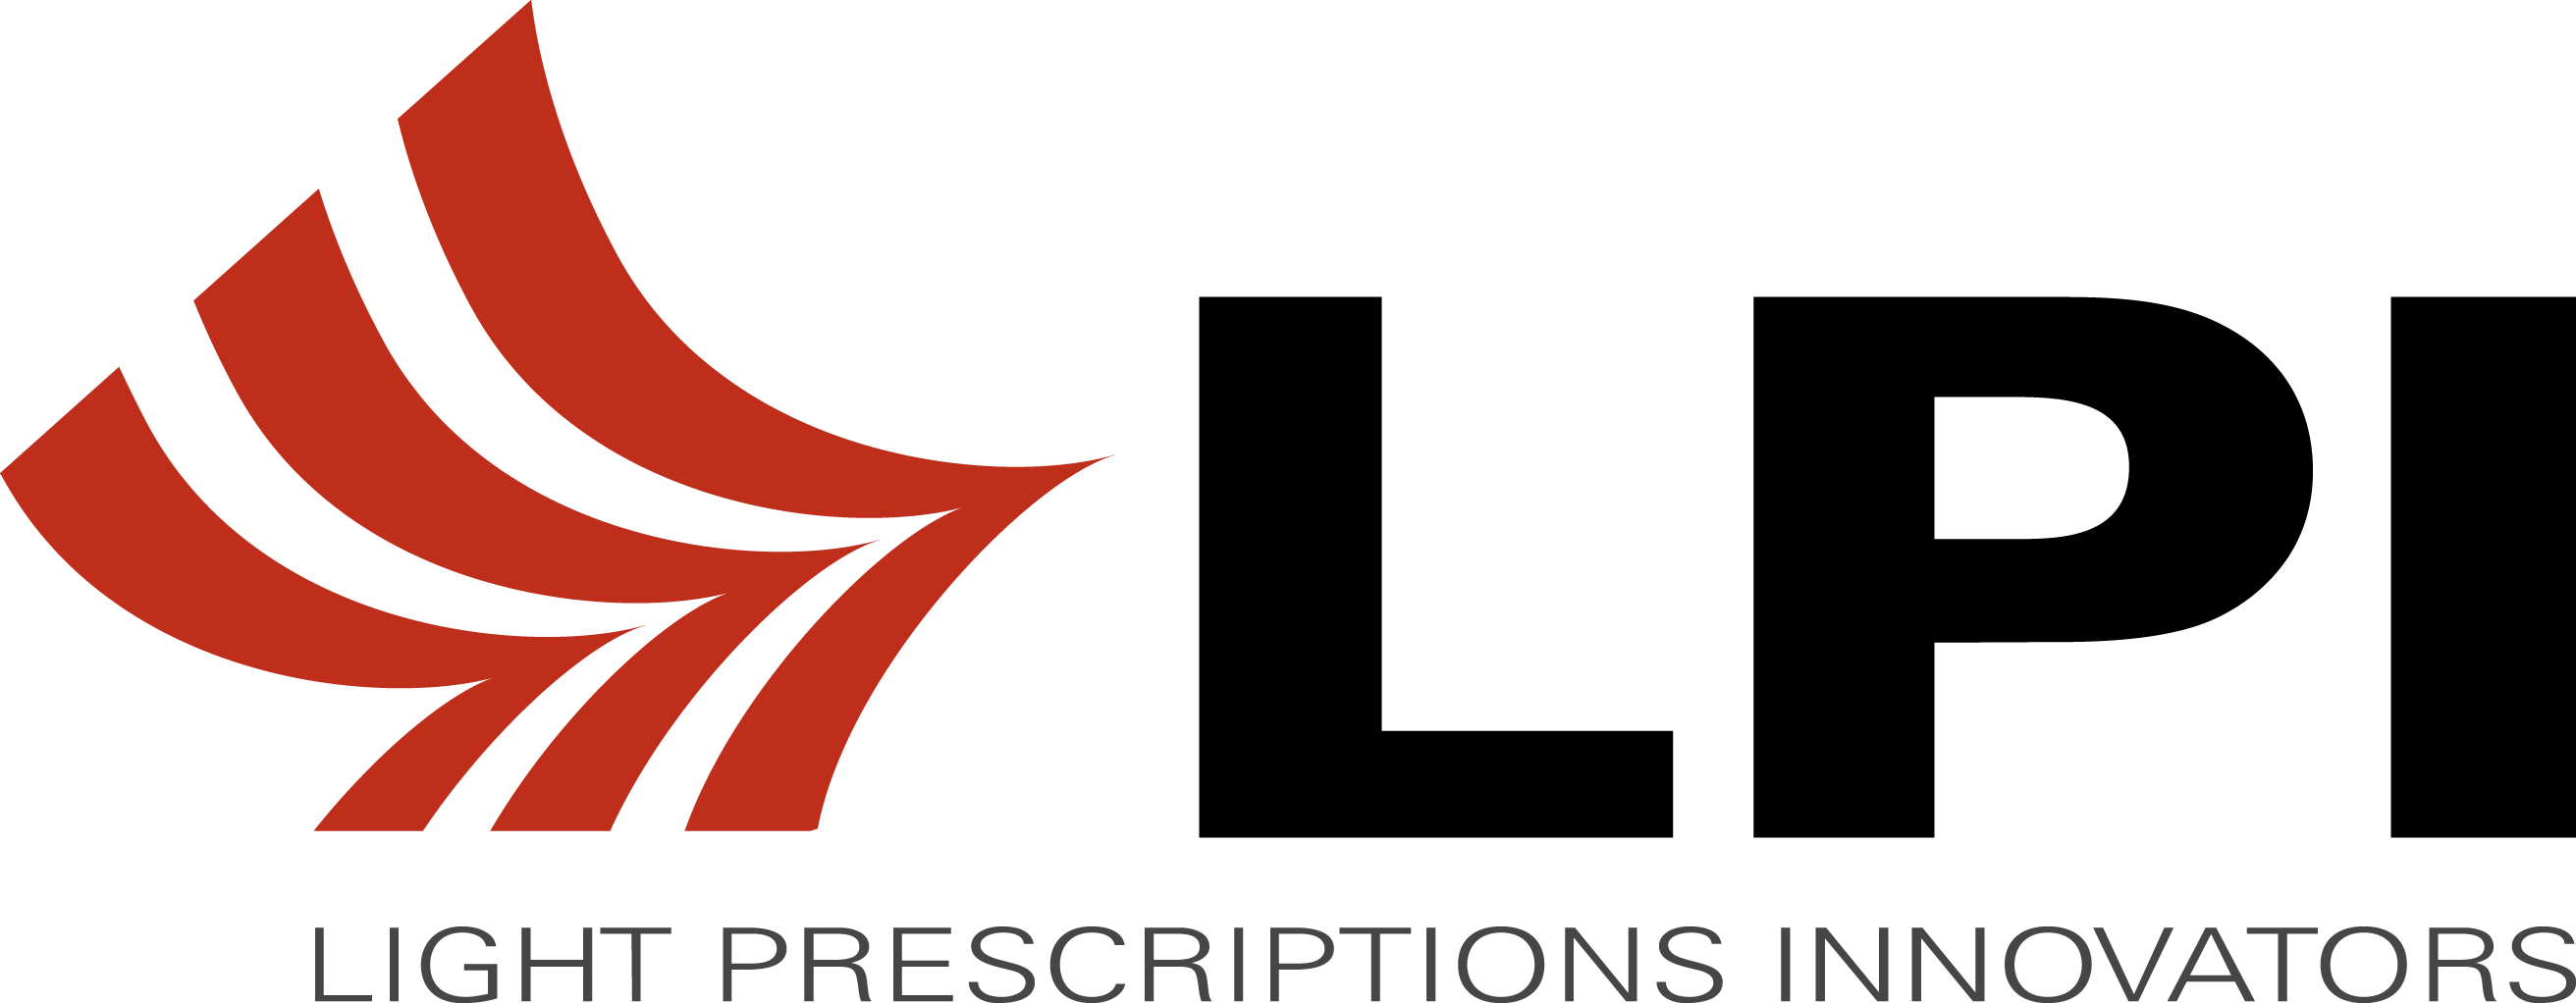 LPI Logo - Light Prescriptions Innovators